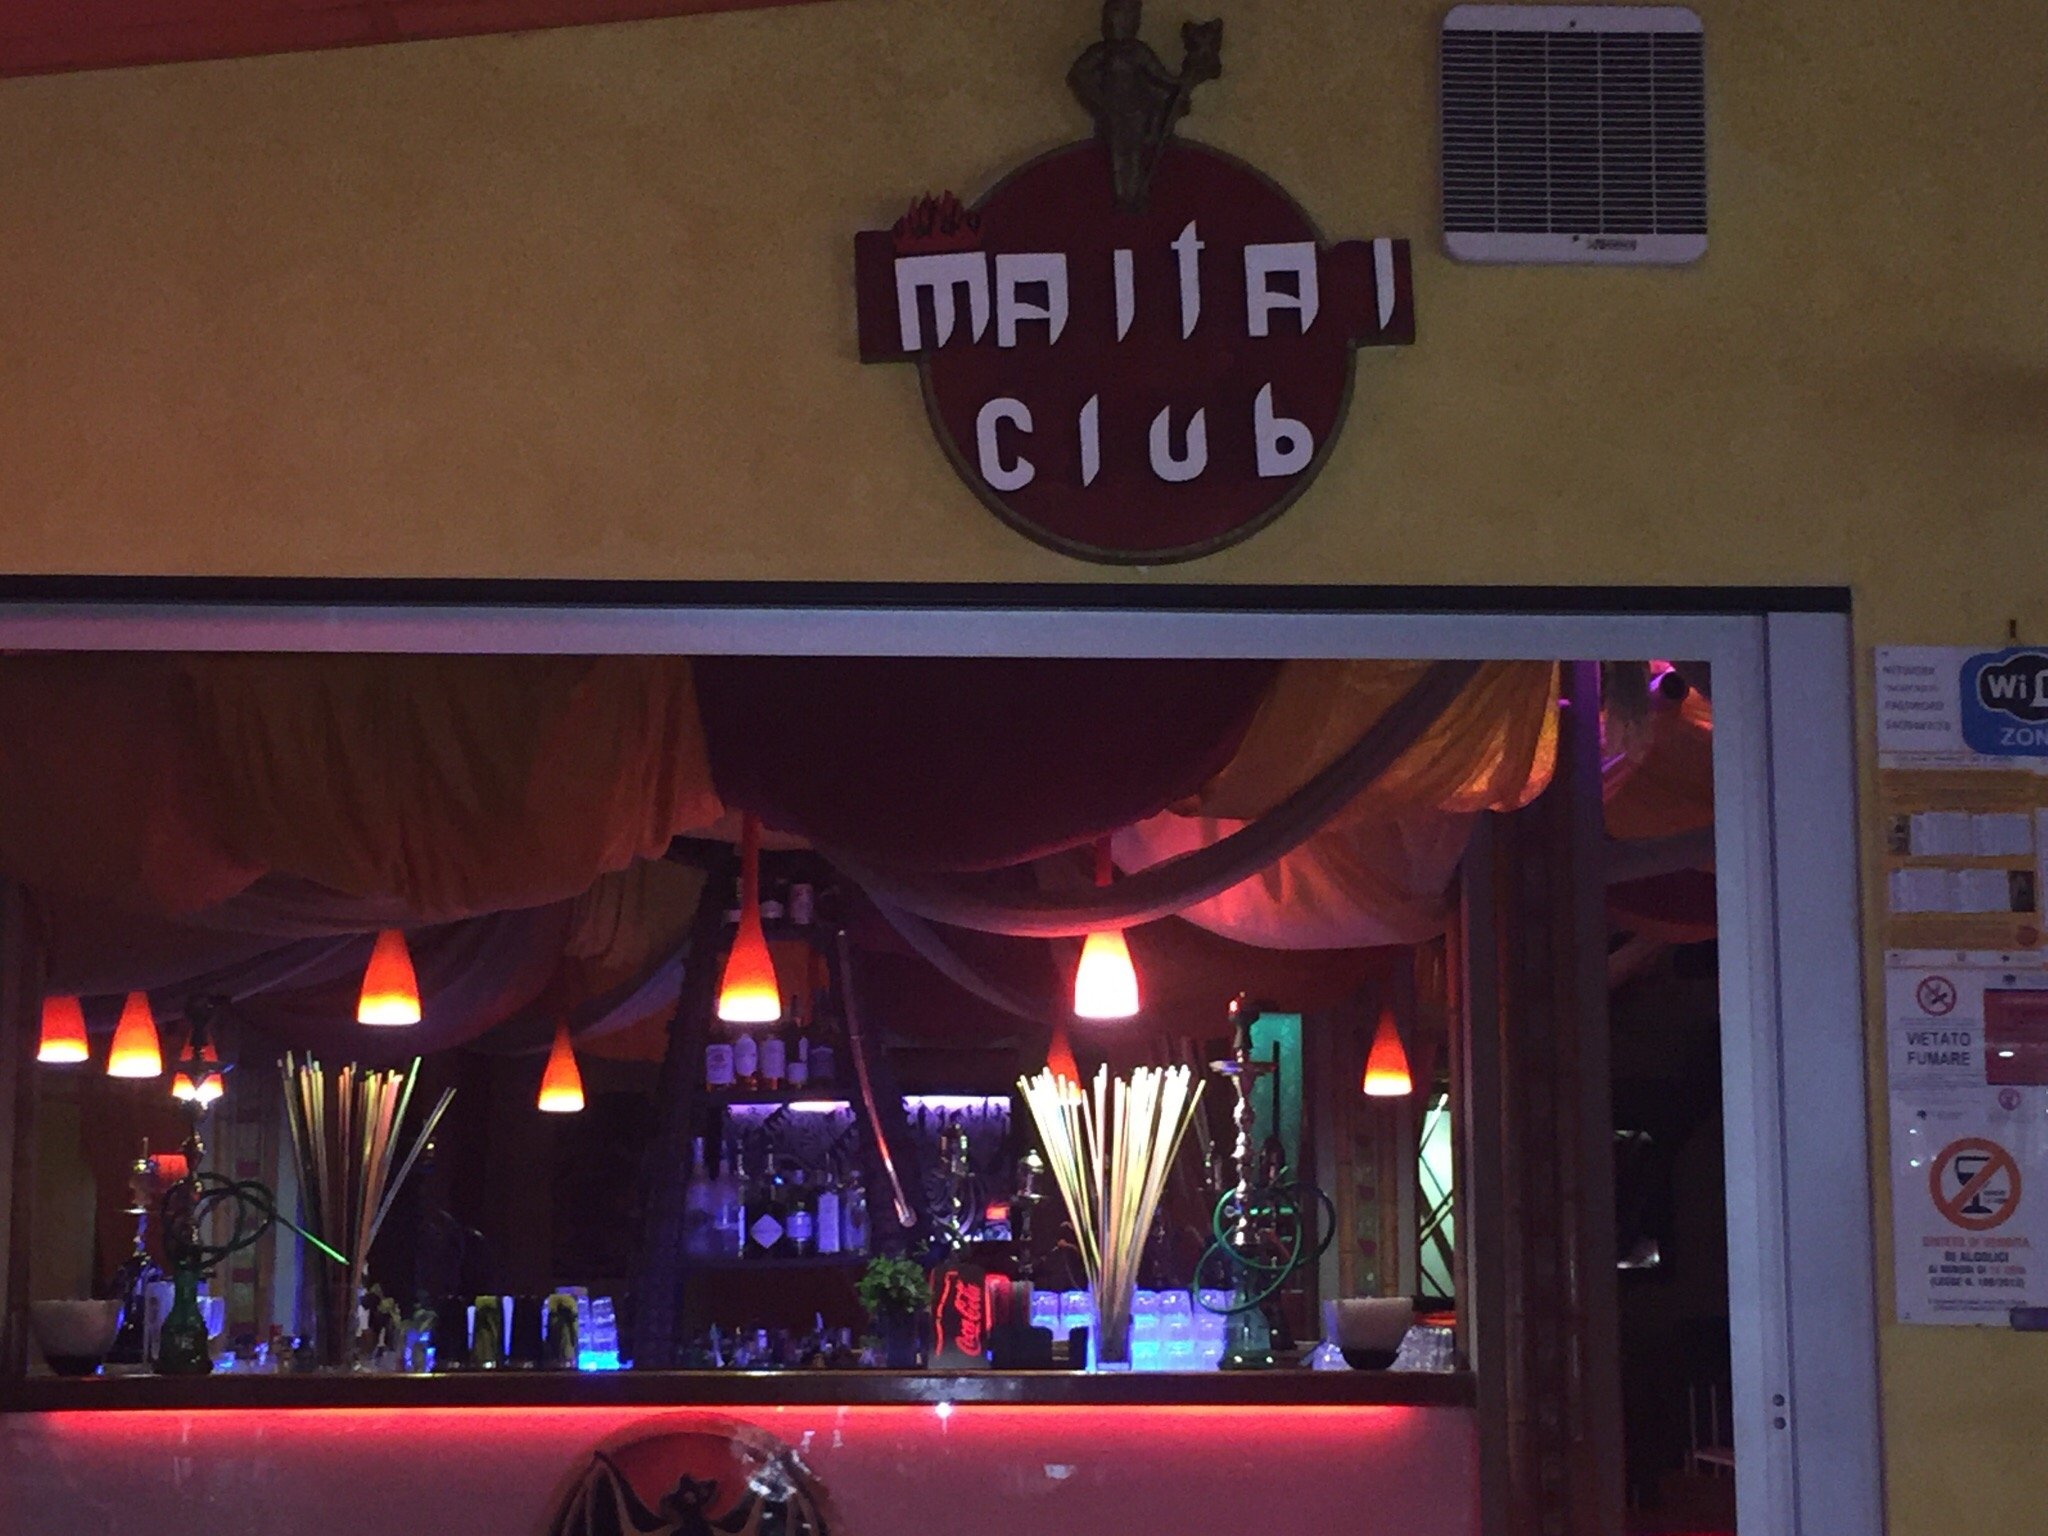 Maitai Club